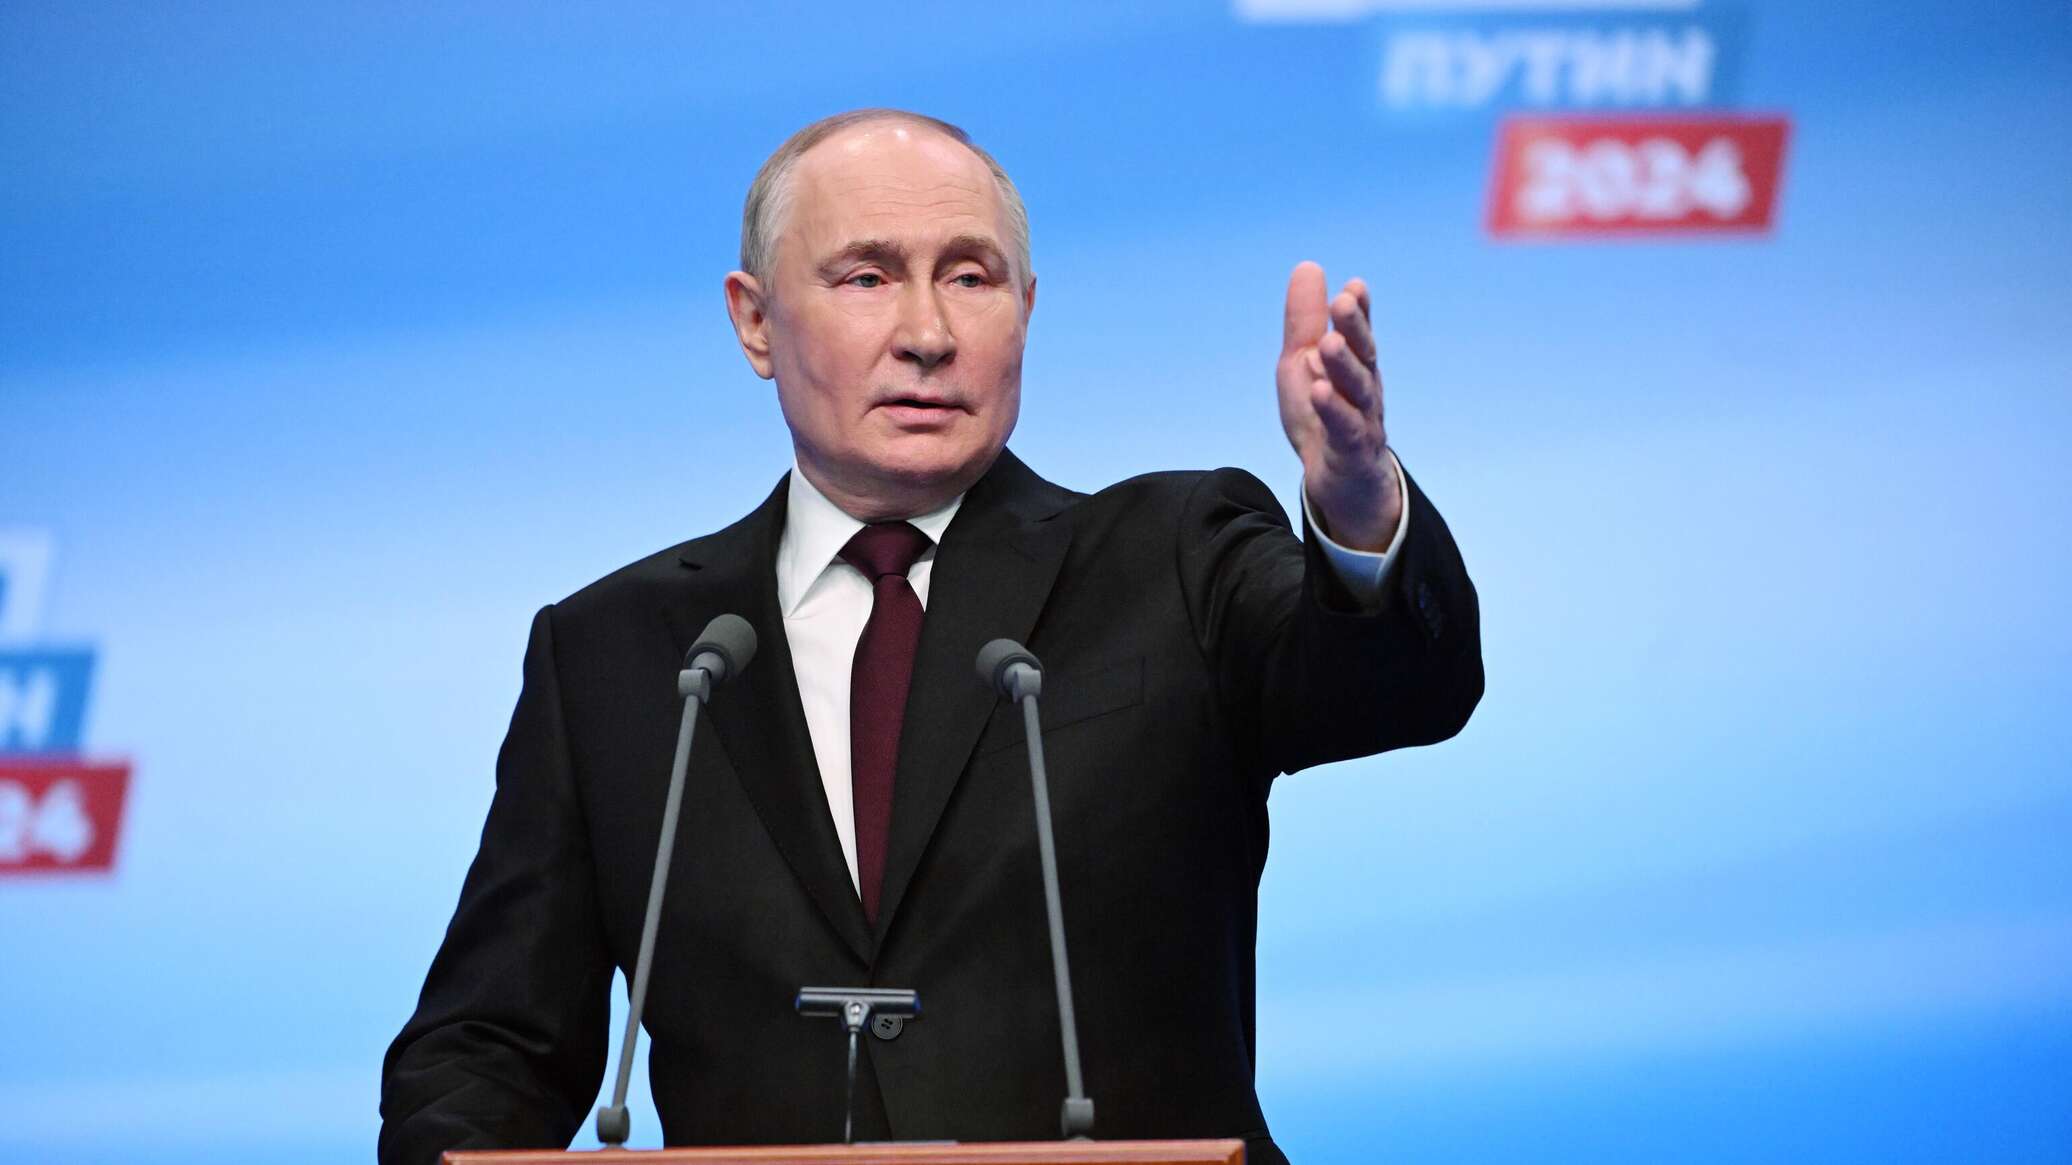 بوتين يتصدر نتائج الانتخابات الرئاسية في سانت بطرسبورغ بنسبة 81.65 % من الأصوات